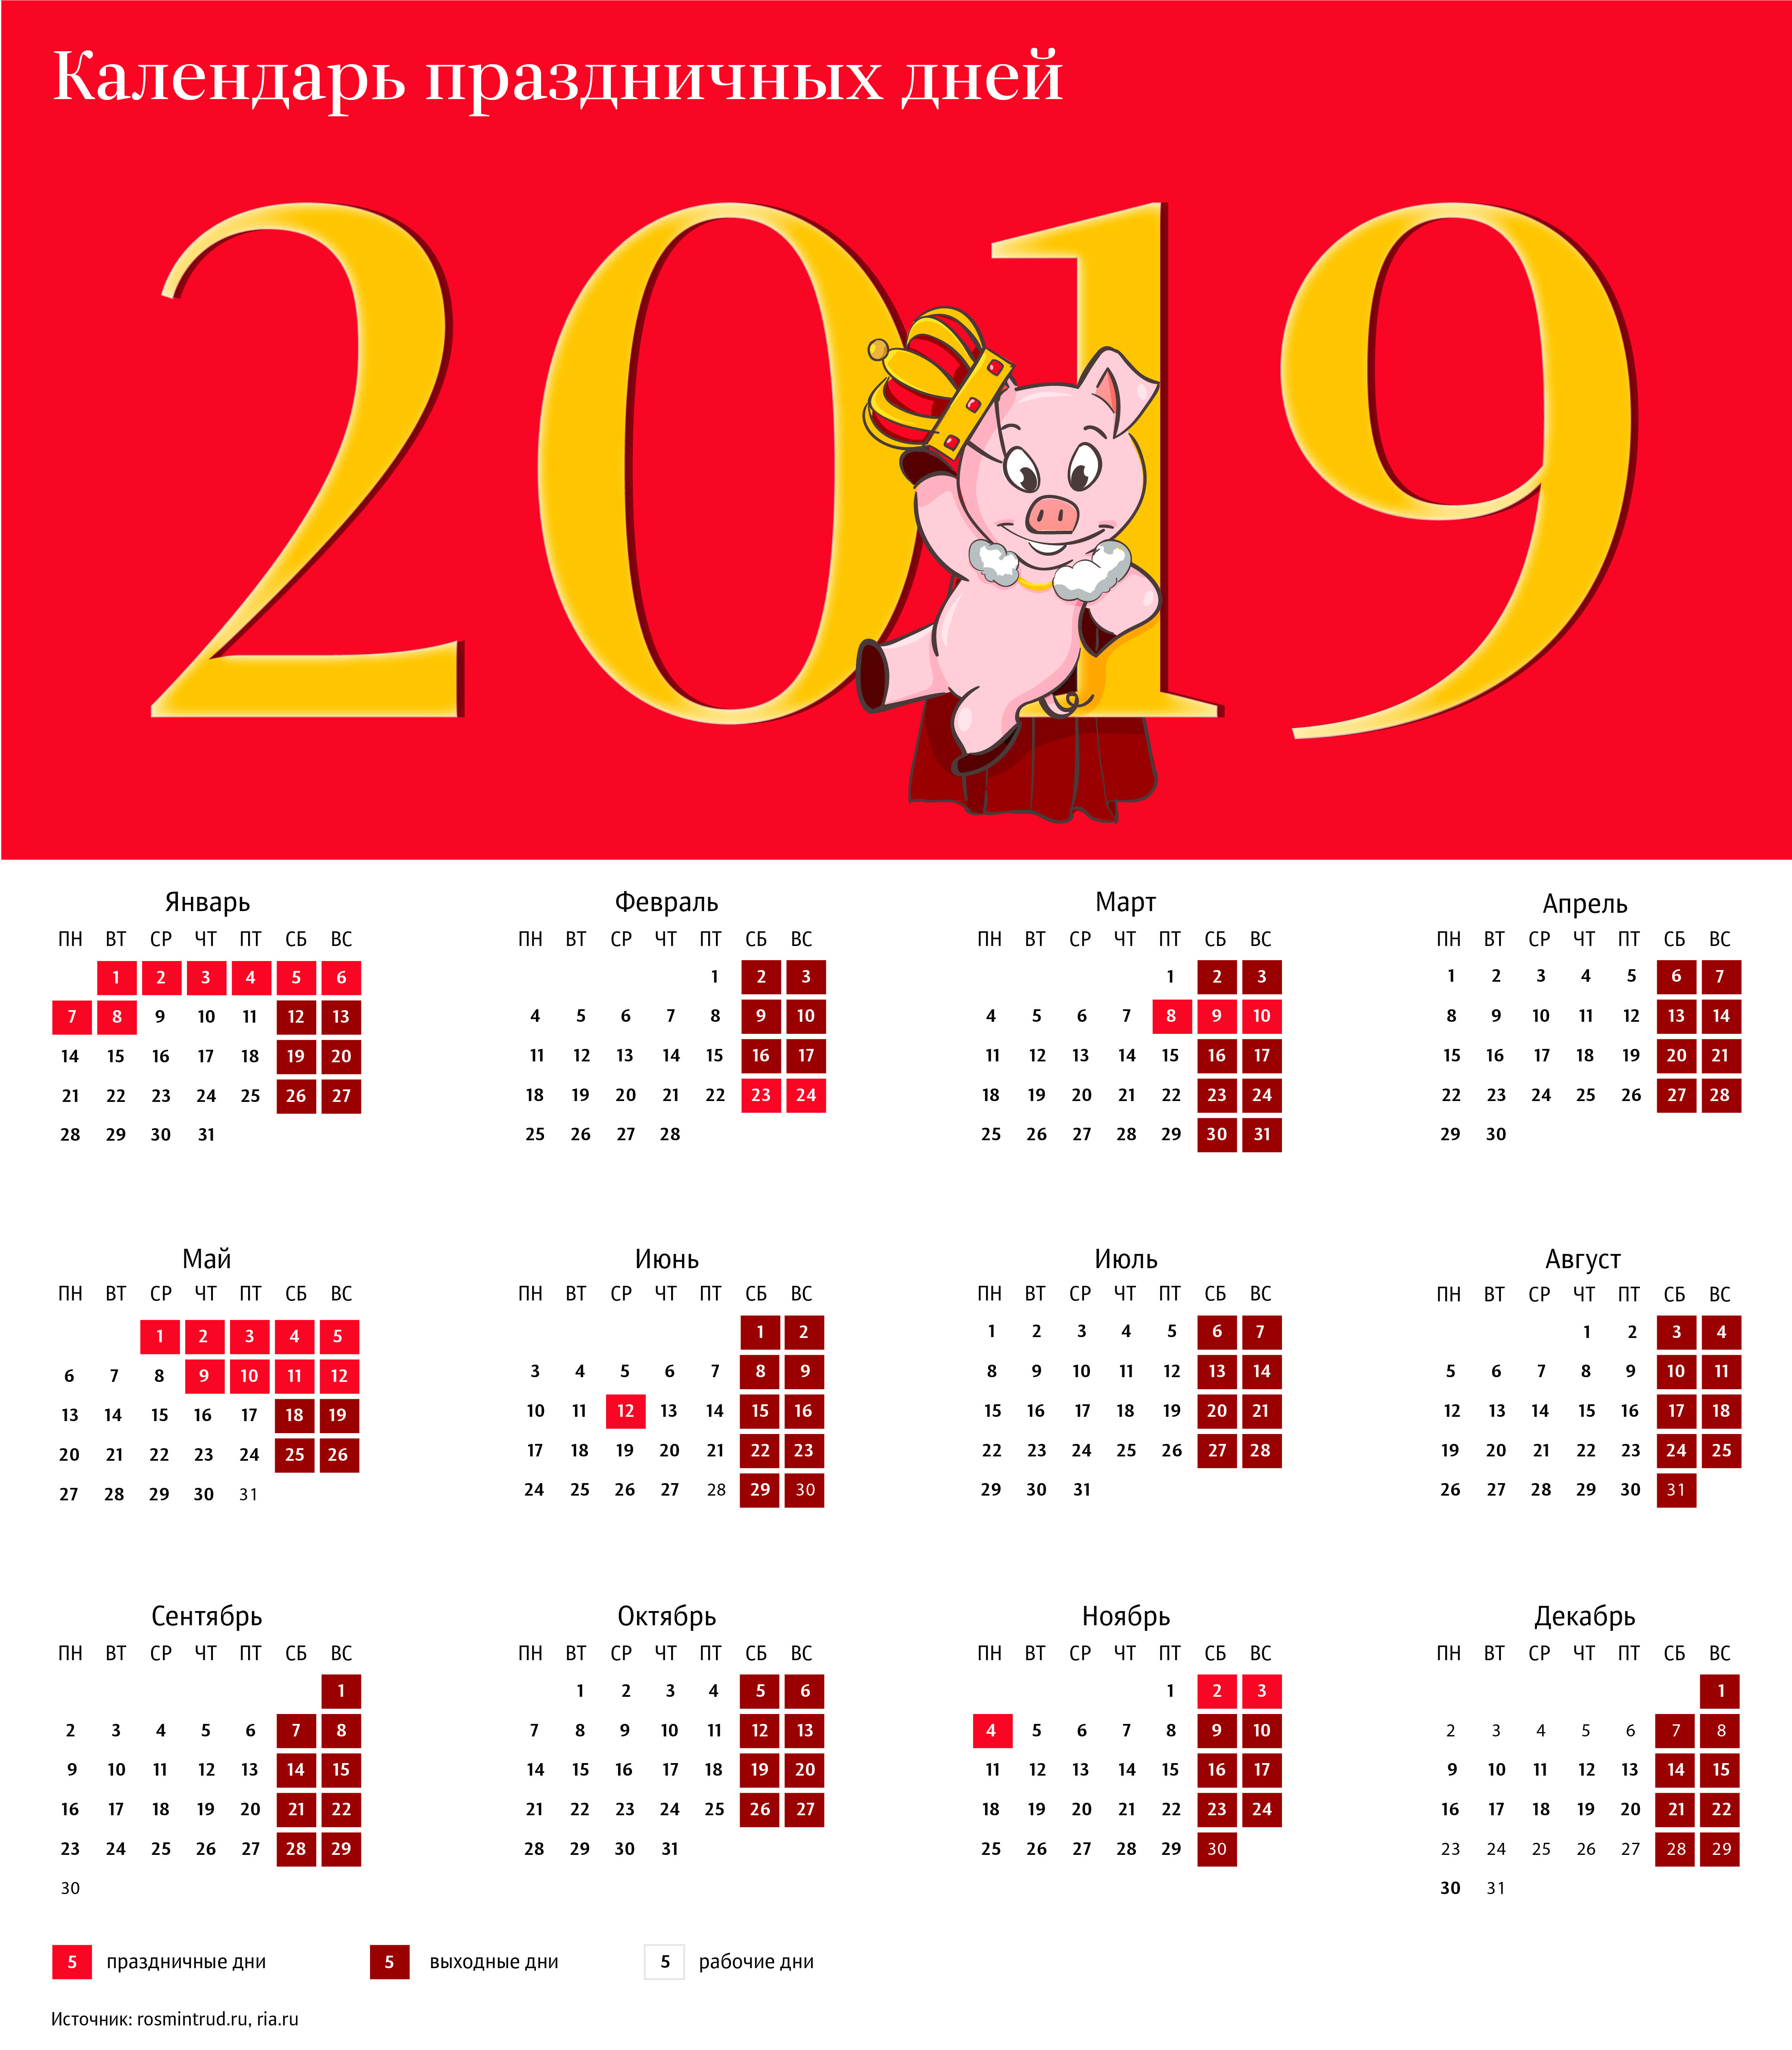 Календарь праздничных дней на 2019 год